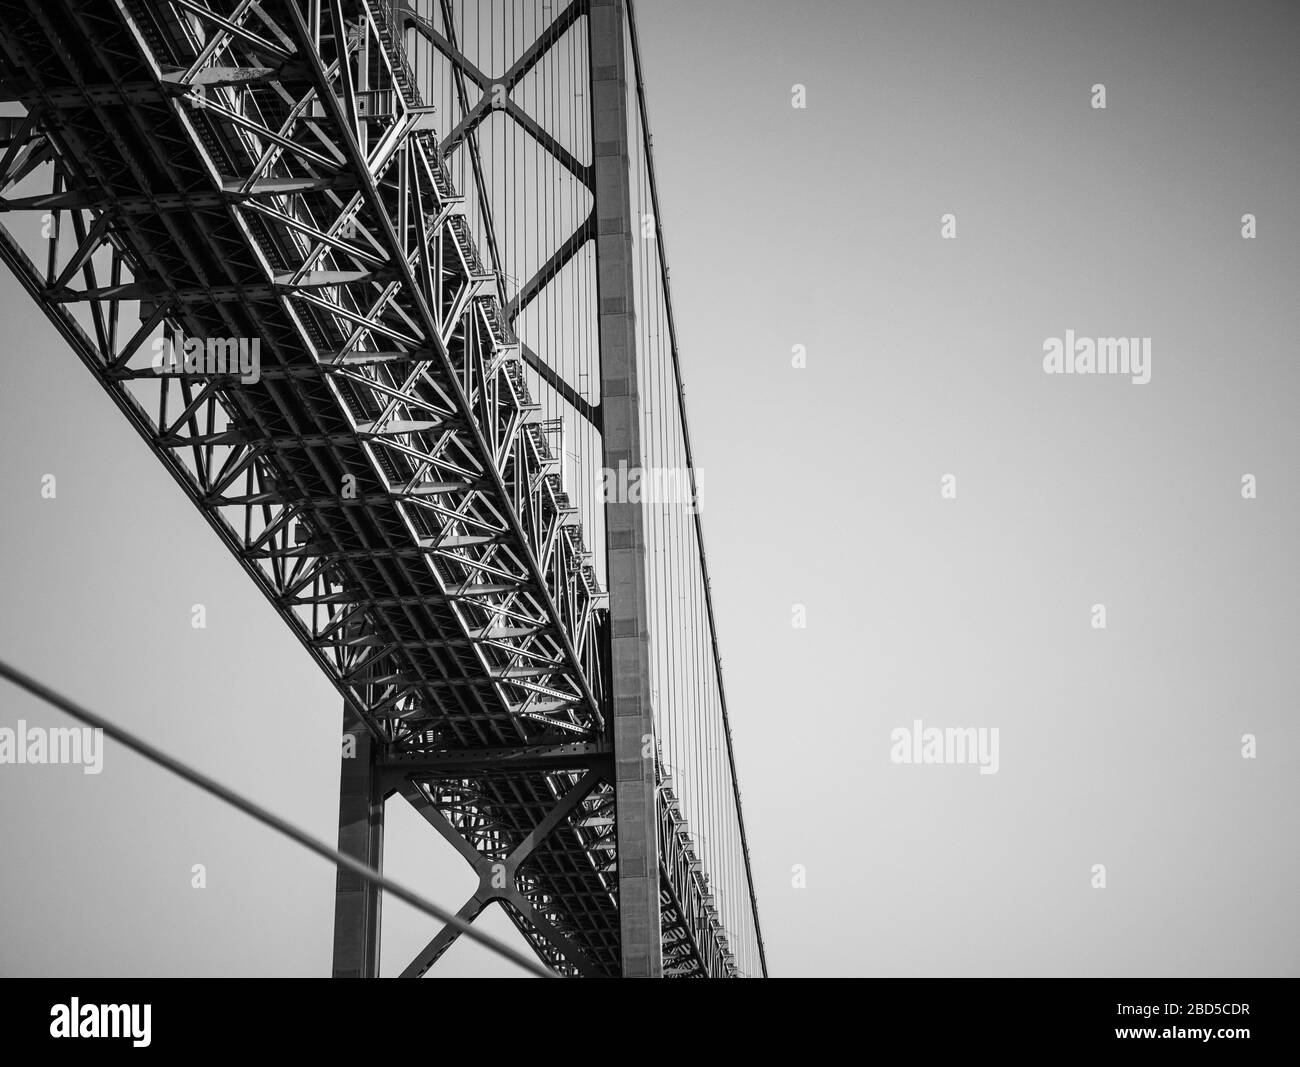 25 Pont de Abril, Lisbonne, Portugal. Détail abstrait noir et blanc sous le pont suspendu de 2 km qui surpasse le Tage, Lisbonne. Banque D'Images